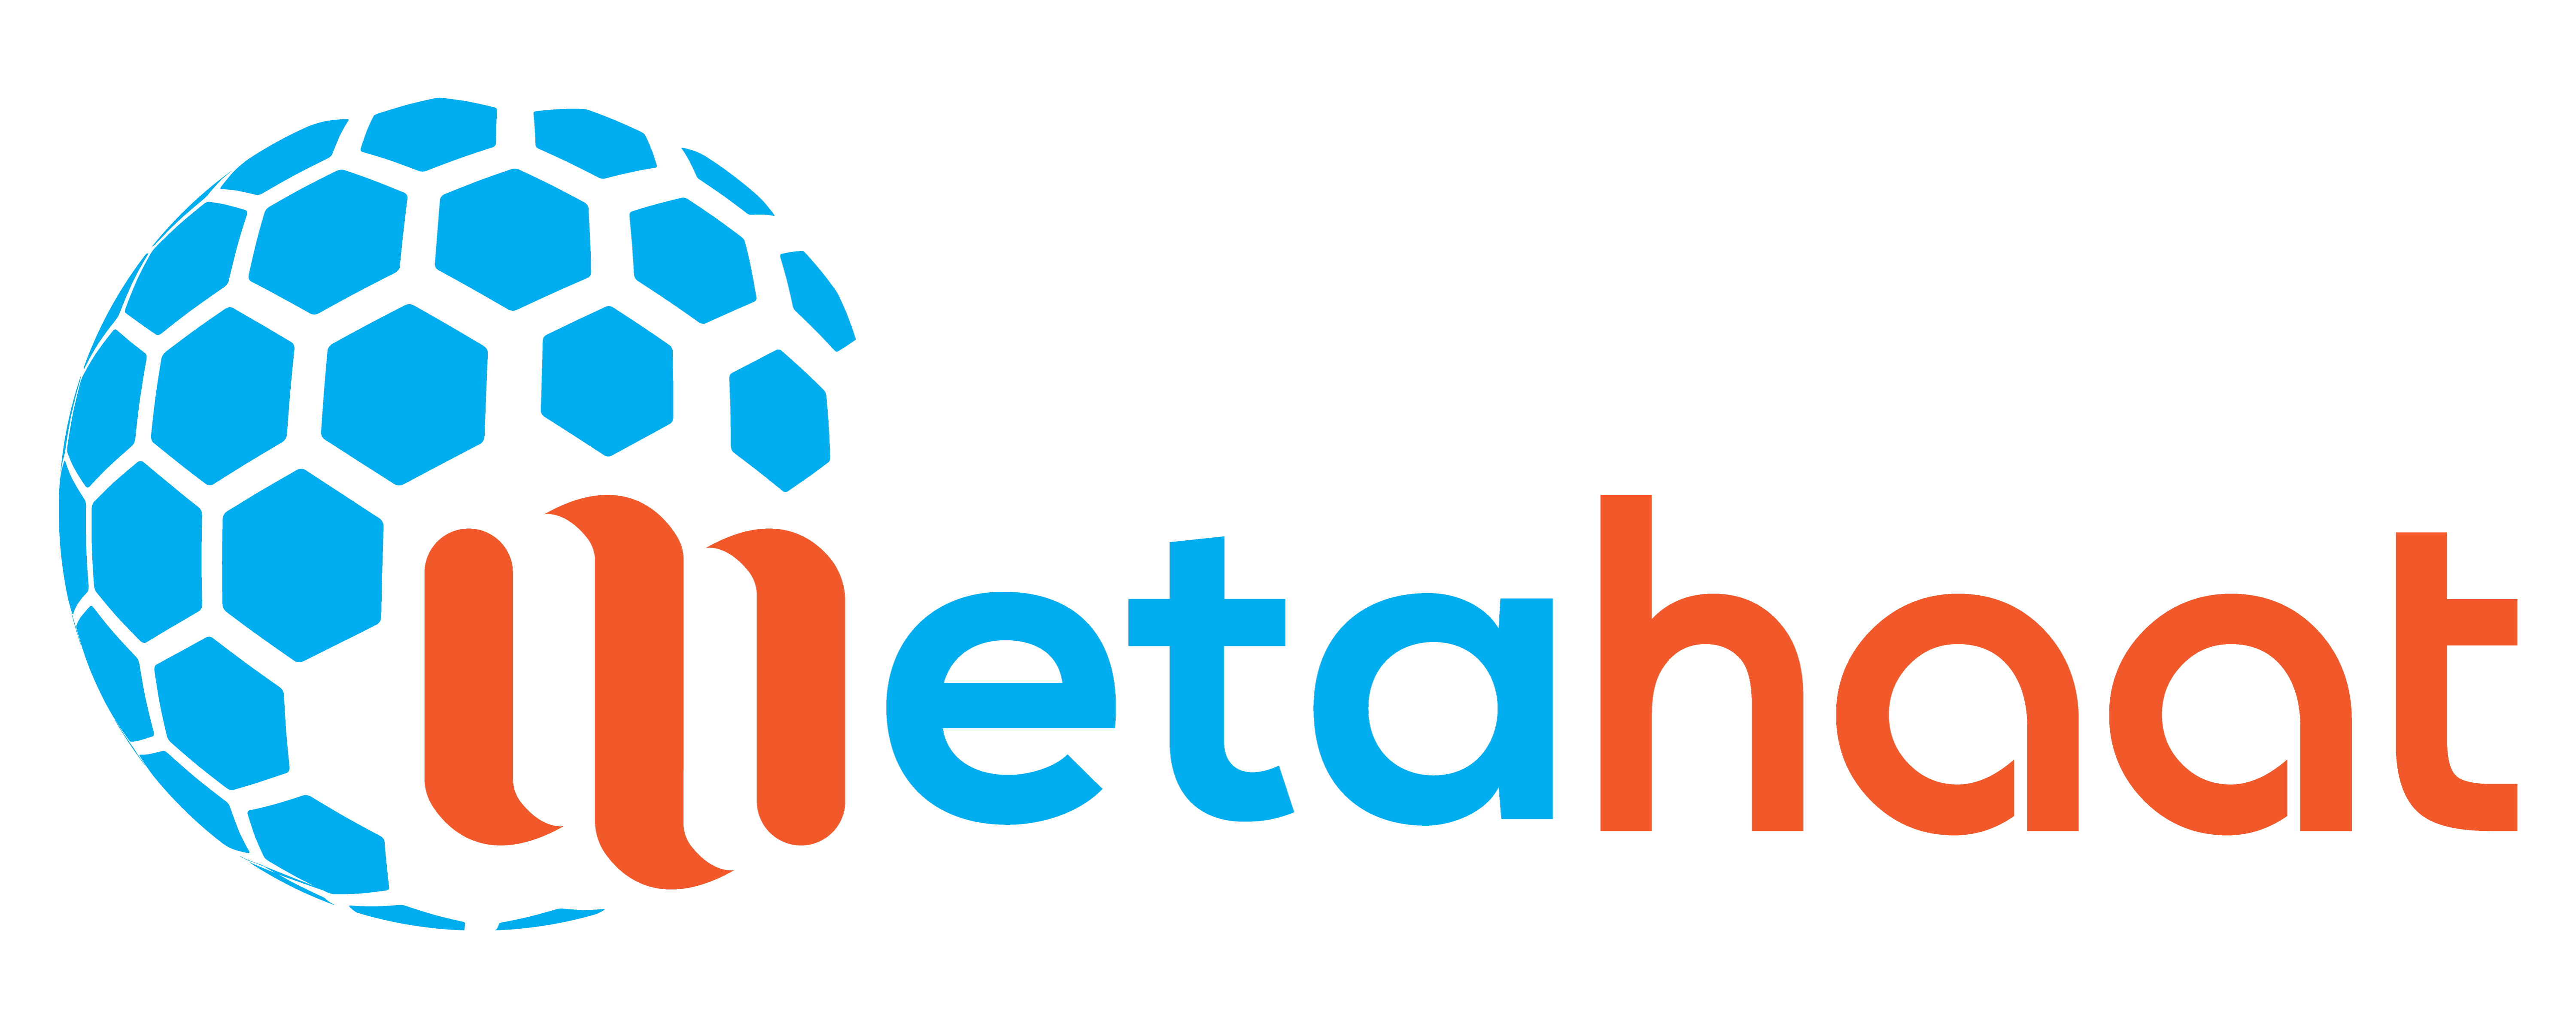 MetaHaat